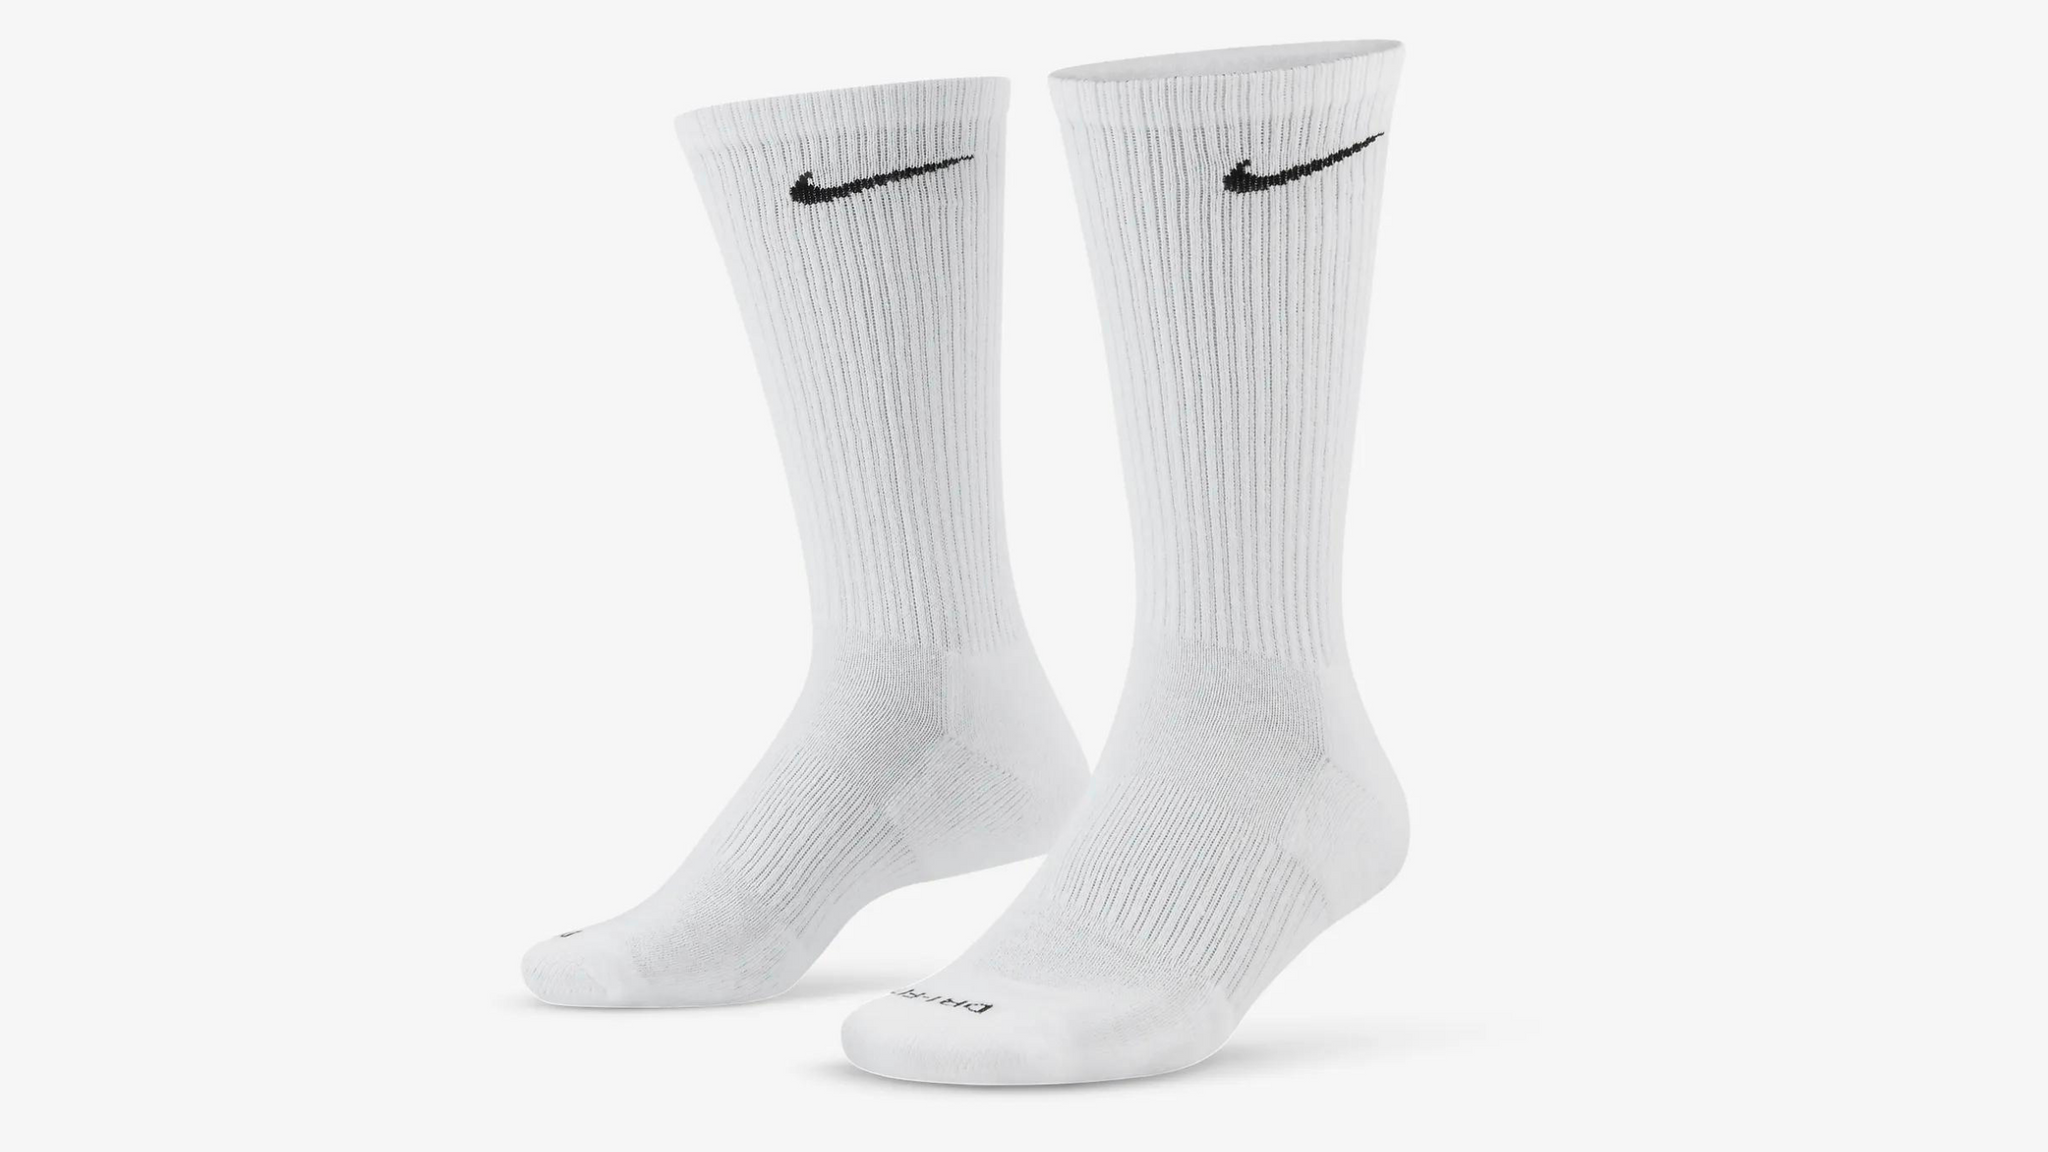 XL Nike Socks Christmas Gifts for Tall Guys